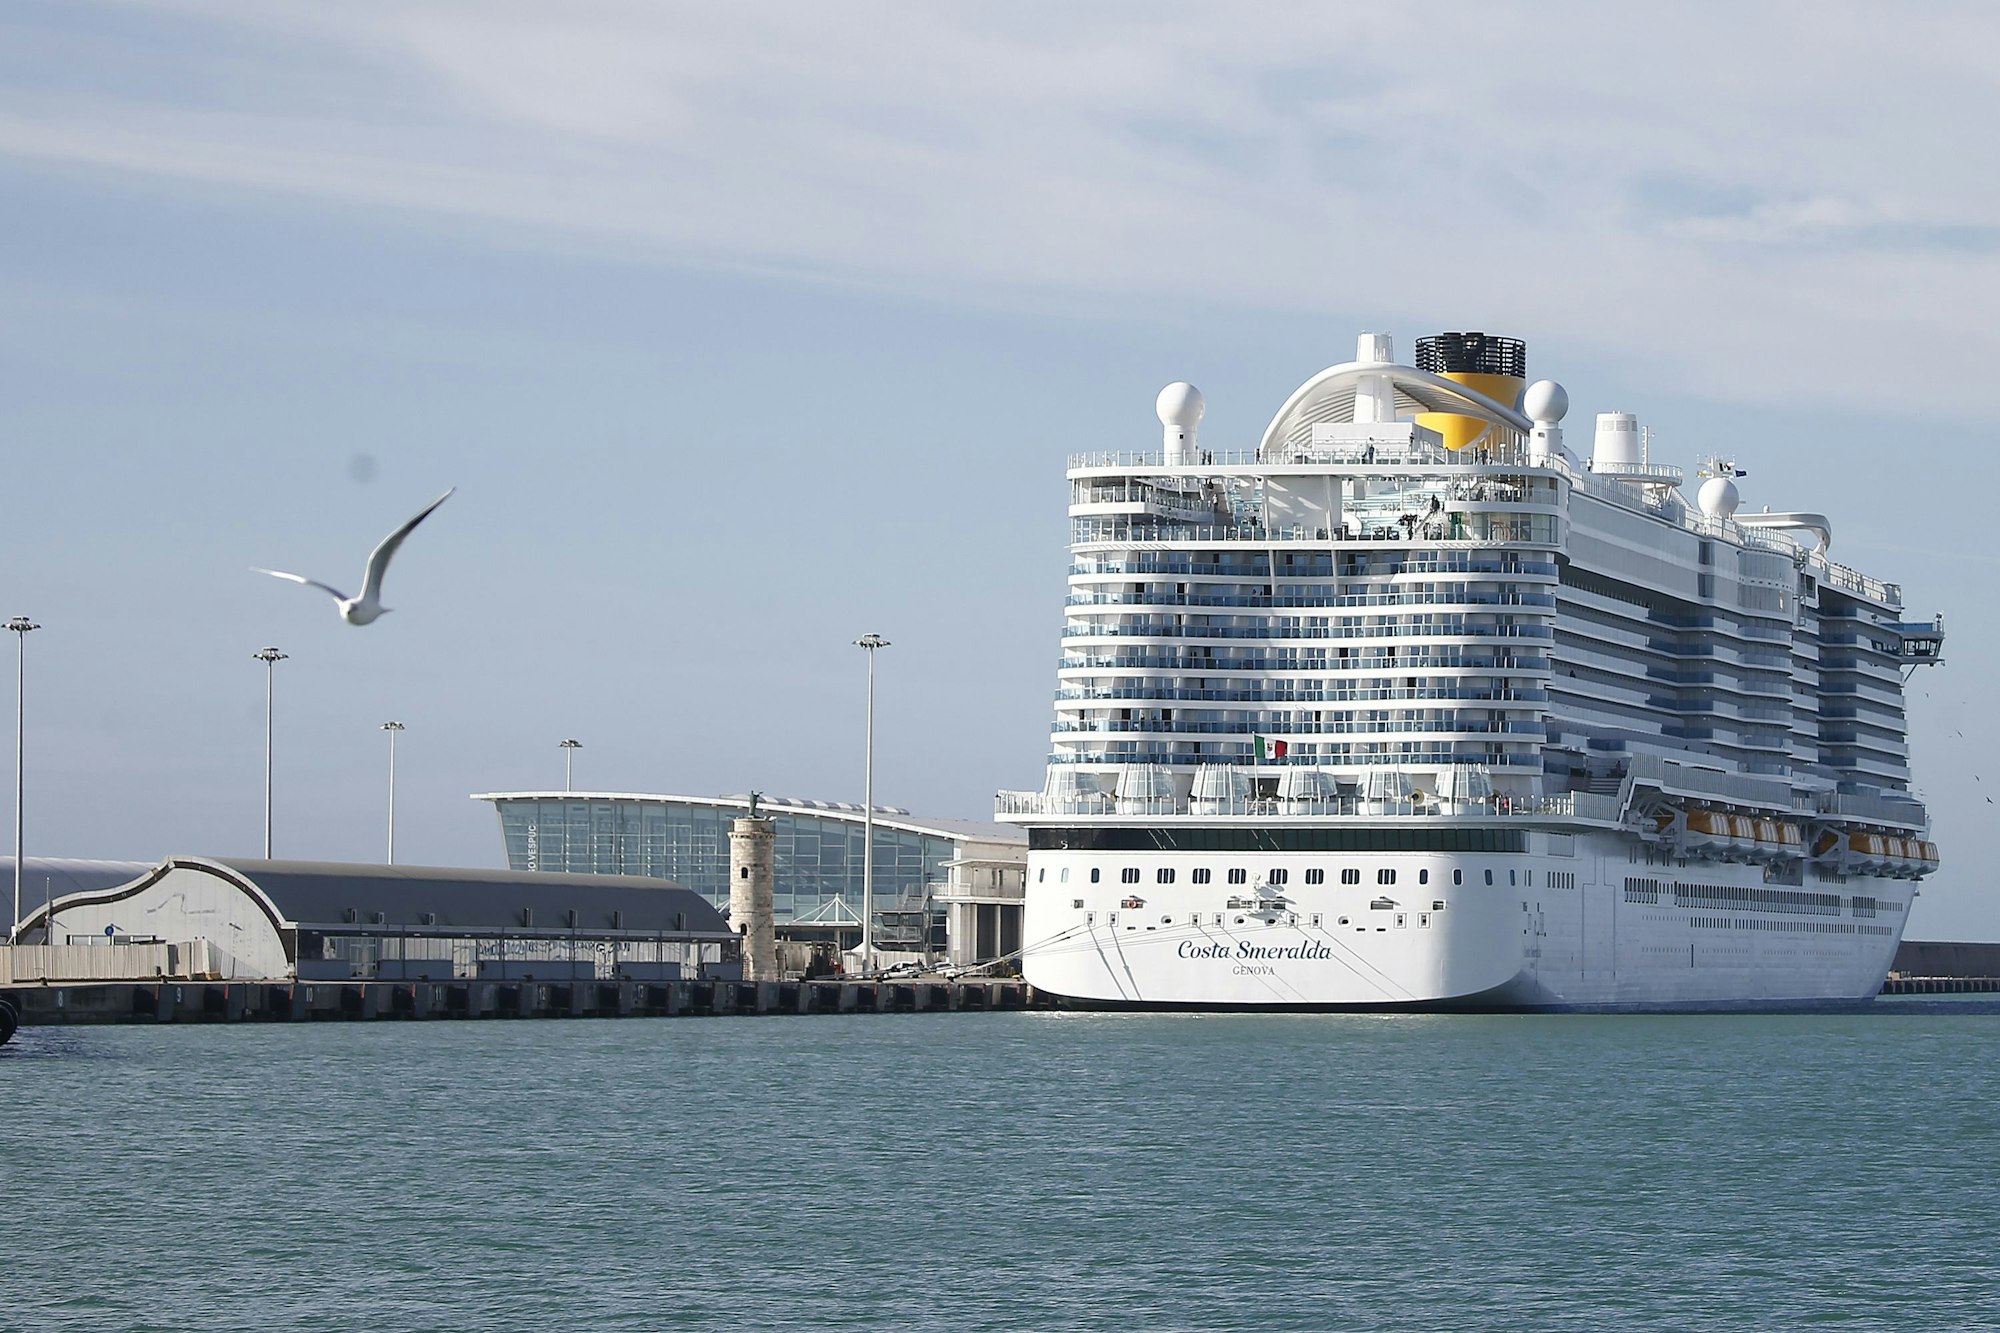 Das Kreuzfahrtschiff „Costa Smeralda“ der Costa Crociere S.p.A. Reederei liegt in einem Hafen in der Nähe von Rom, hier im Januar 2020.